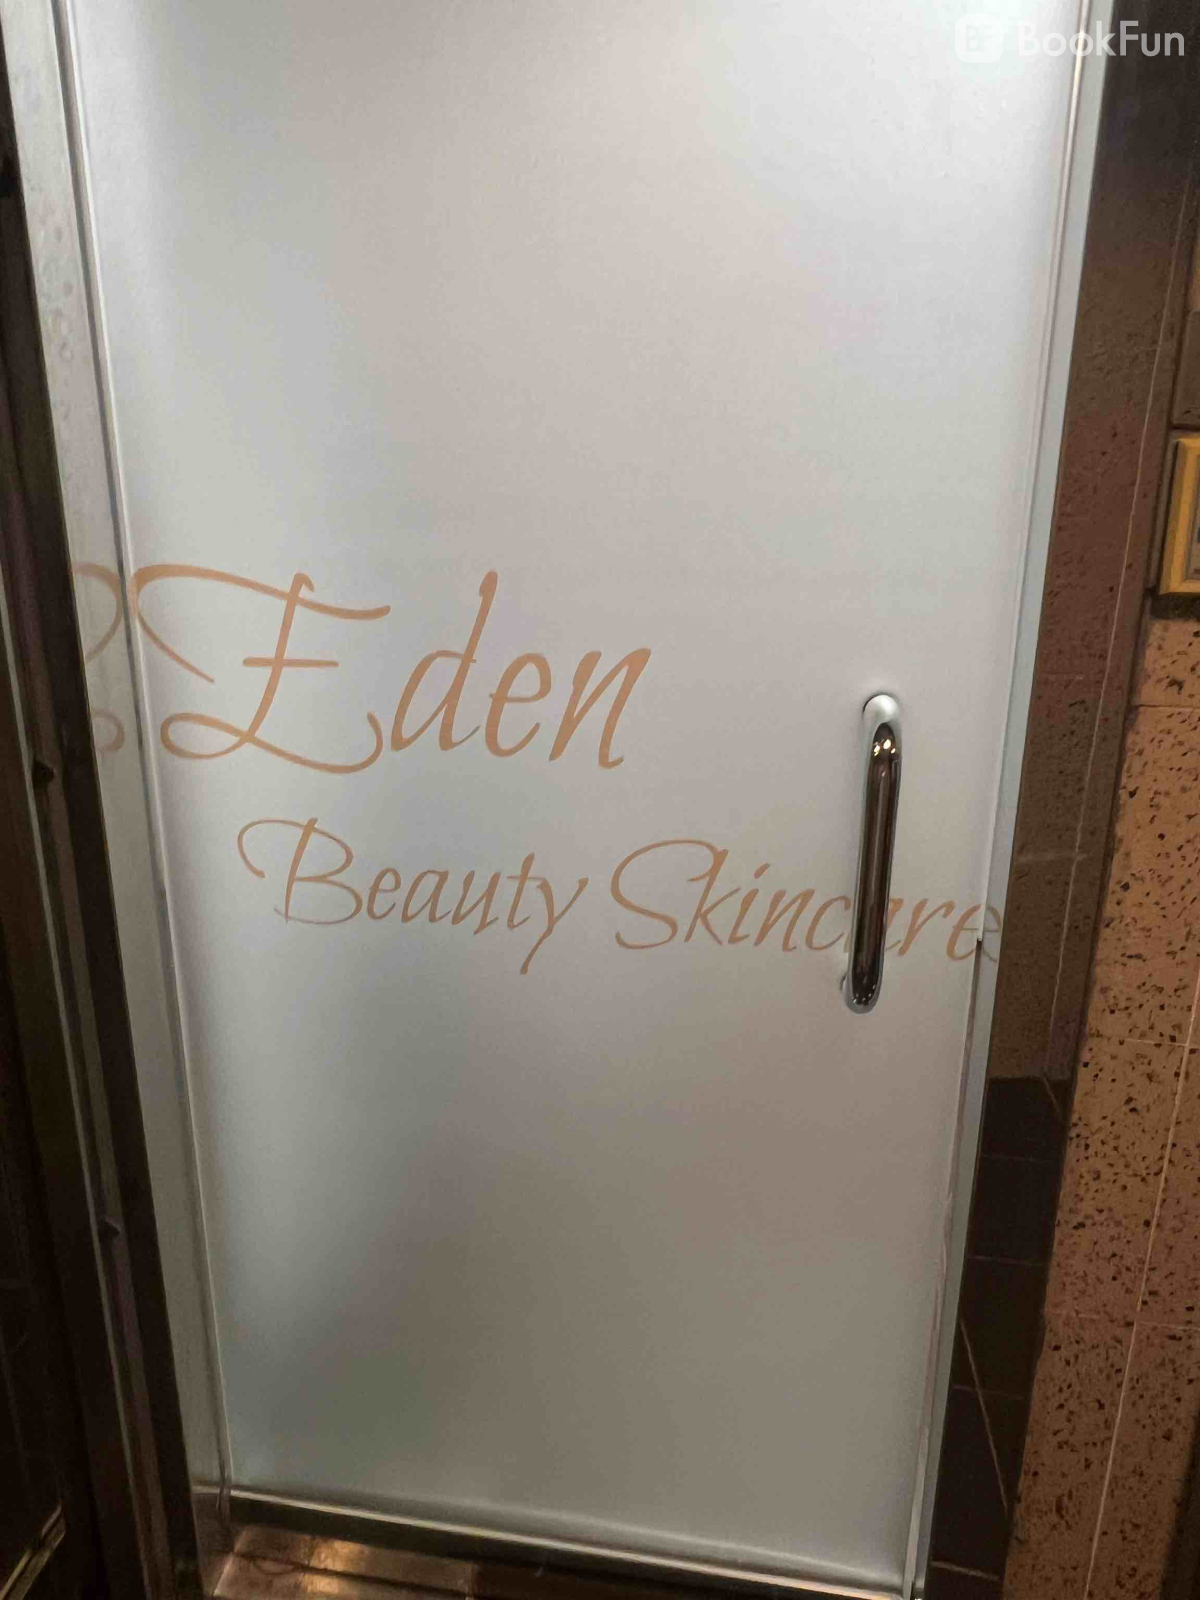 Eden Beauty Skincare